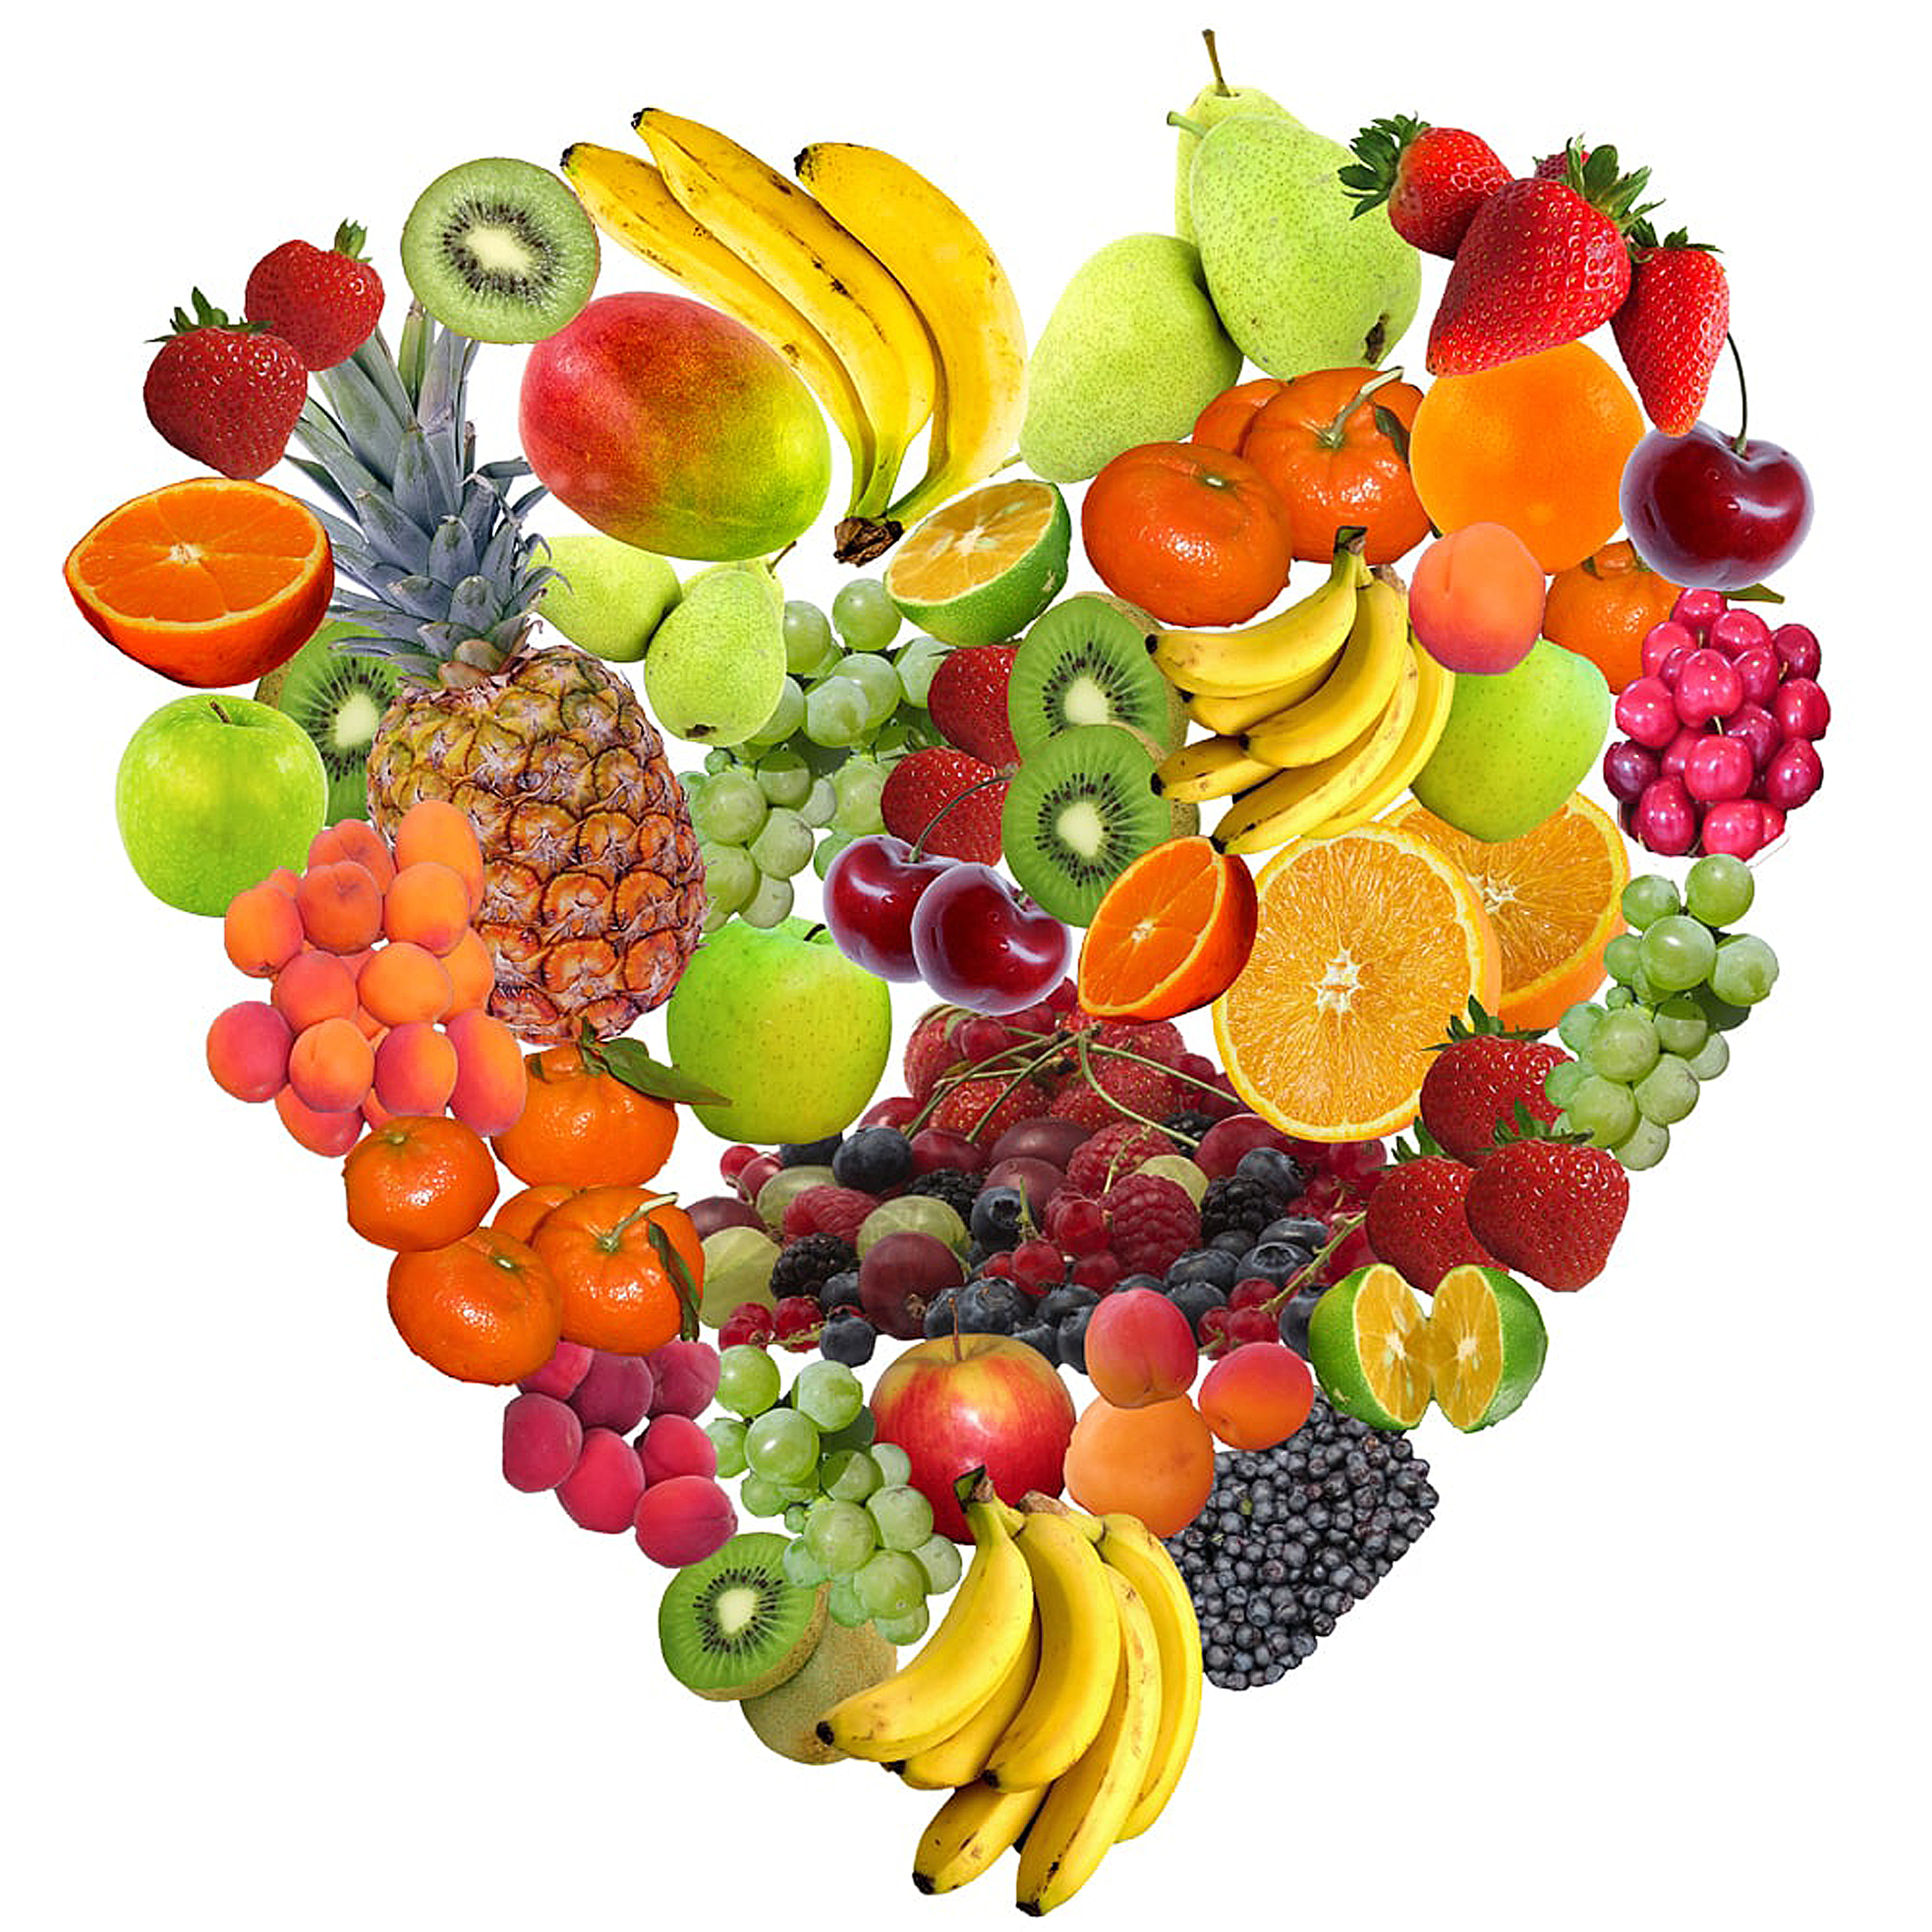 Eet elke dag fruit en groenten voor een gezonde voeding.